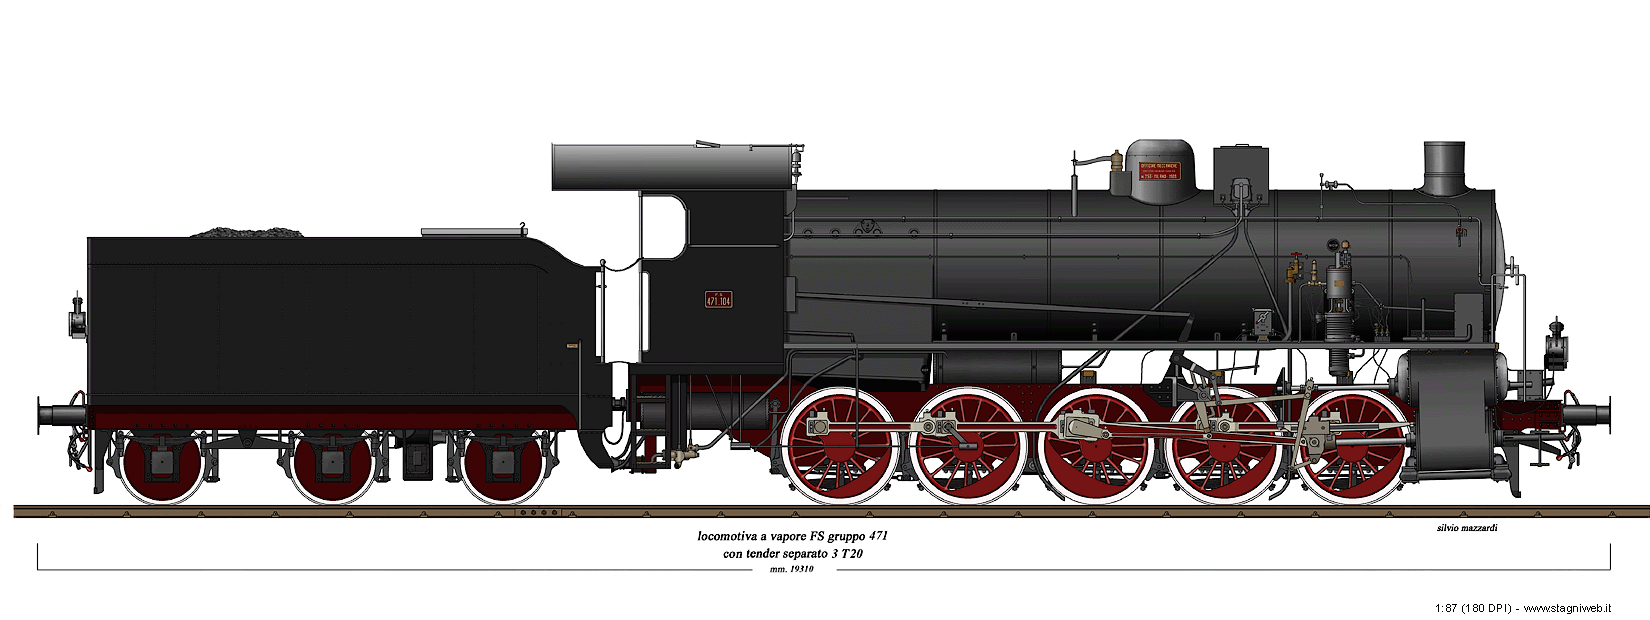 Locomotive a vapore con tender separato - Gr. 471